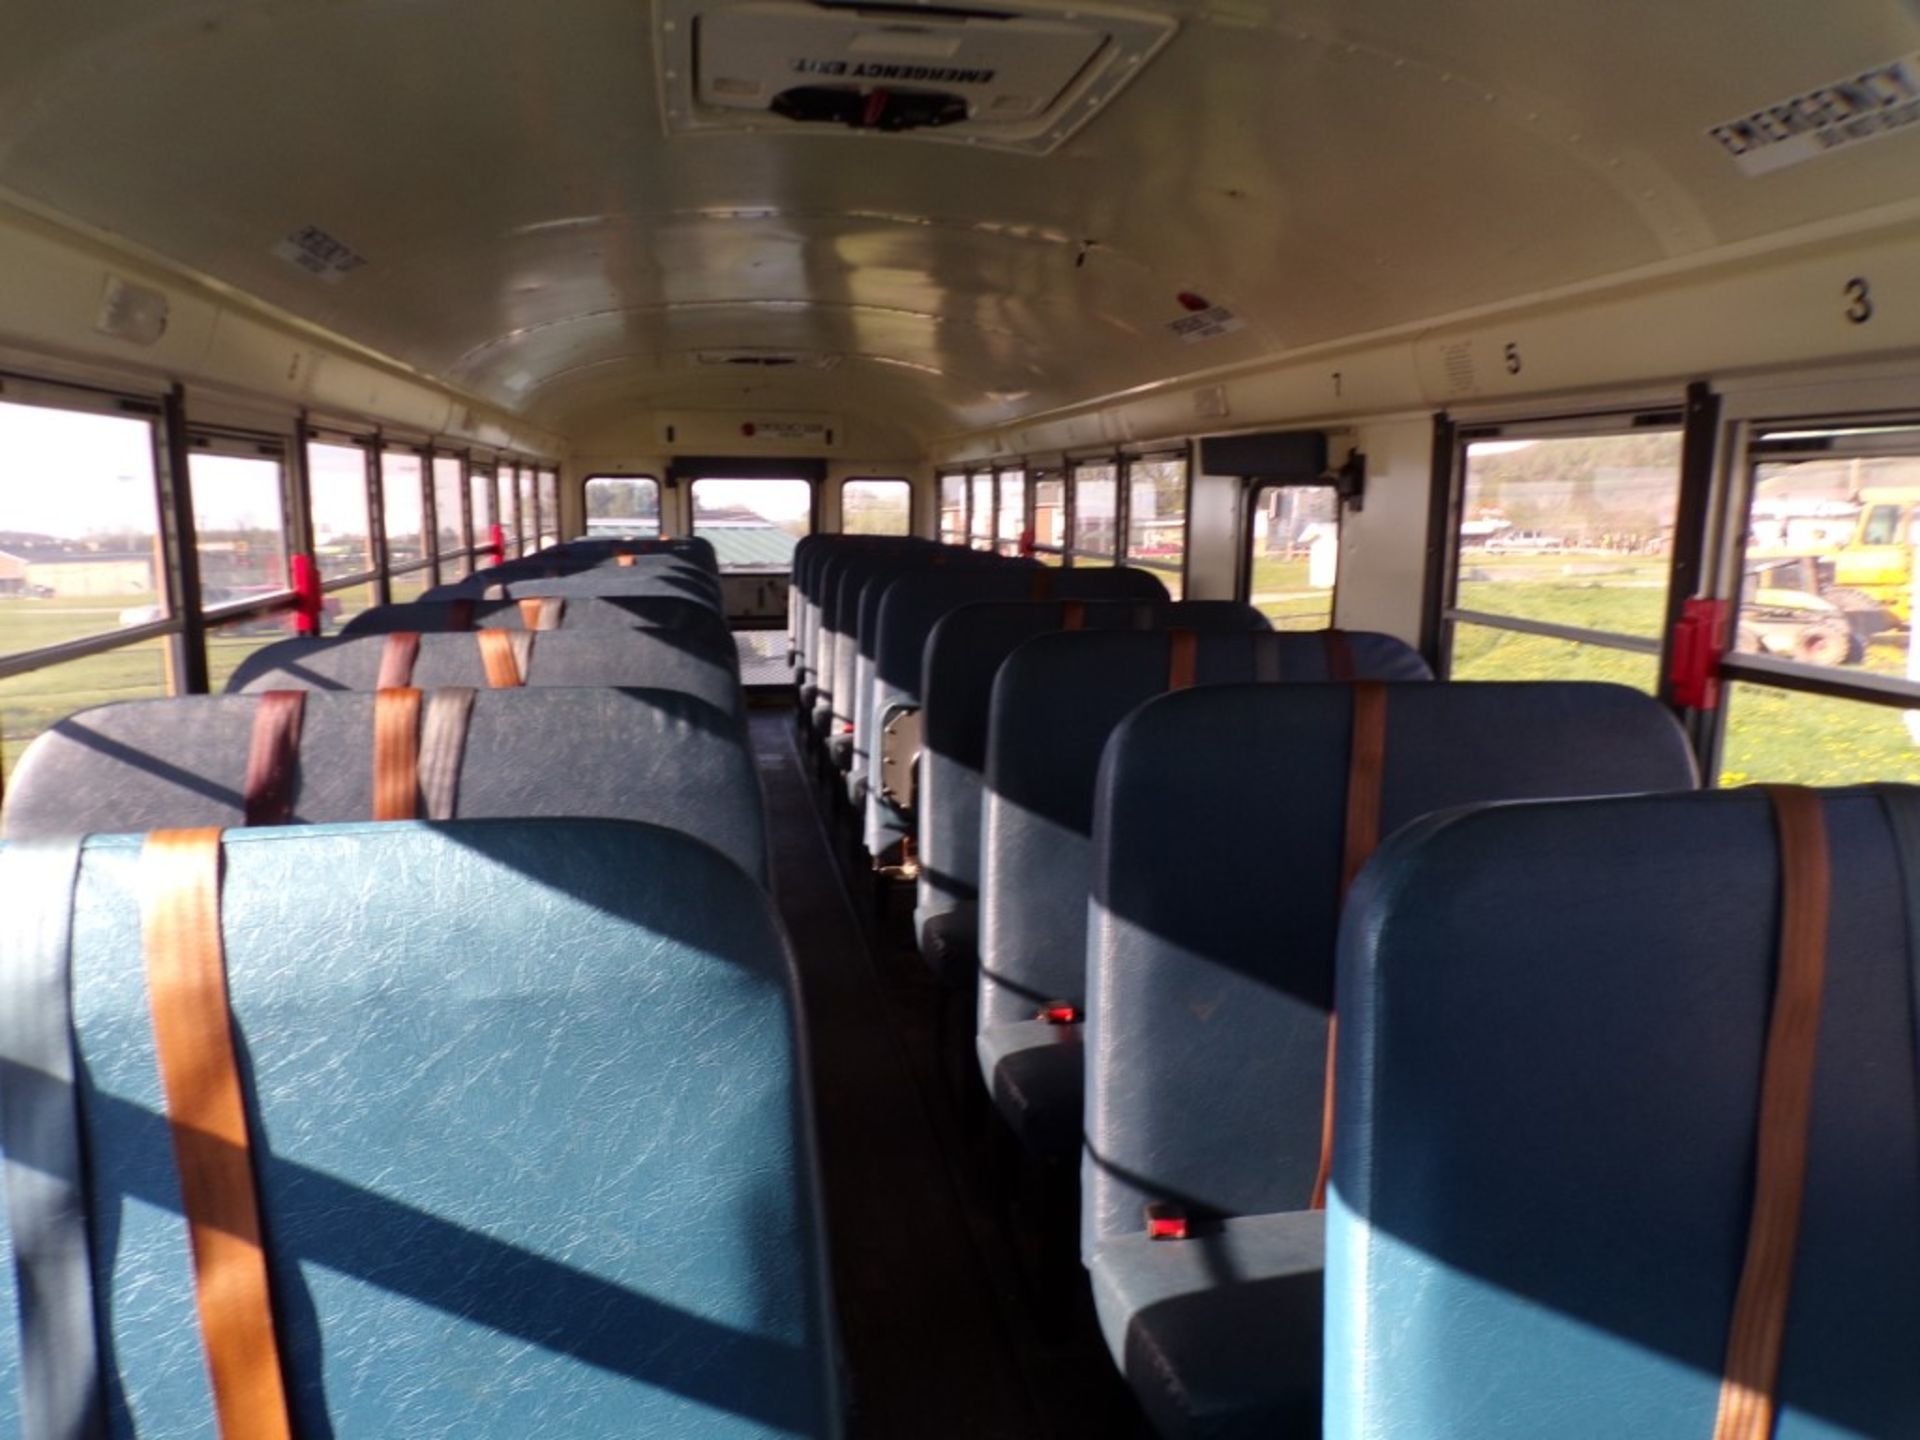 2014 International 66 Seat School Bus, Maxx Force Diesel, #266, 139,130 Miles, Vin # - Image 5 of 6